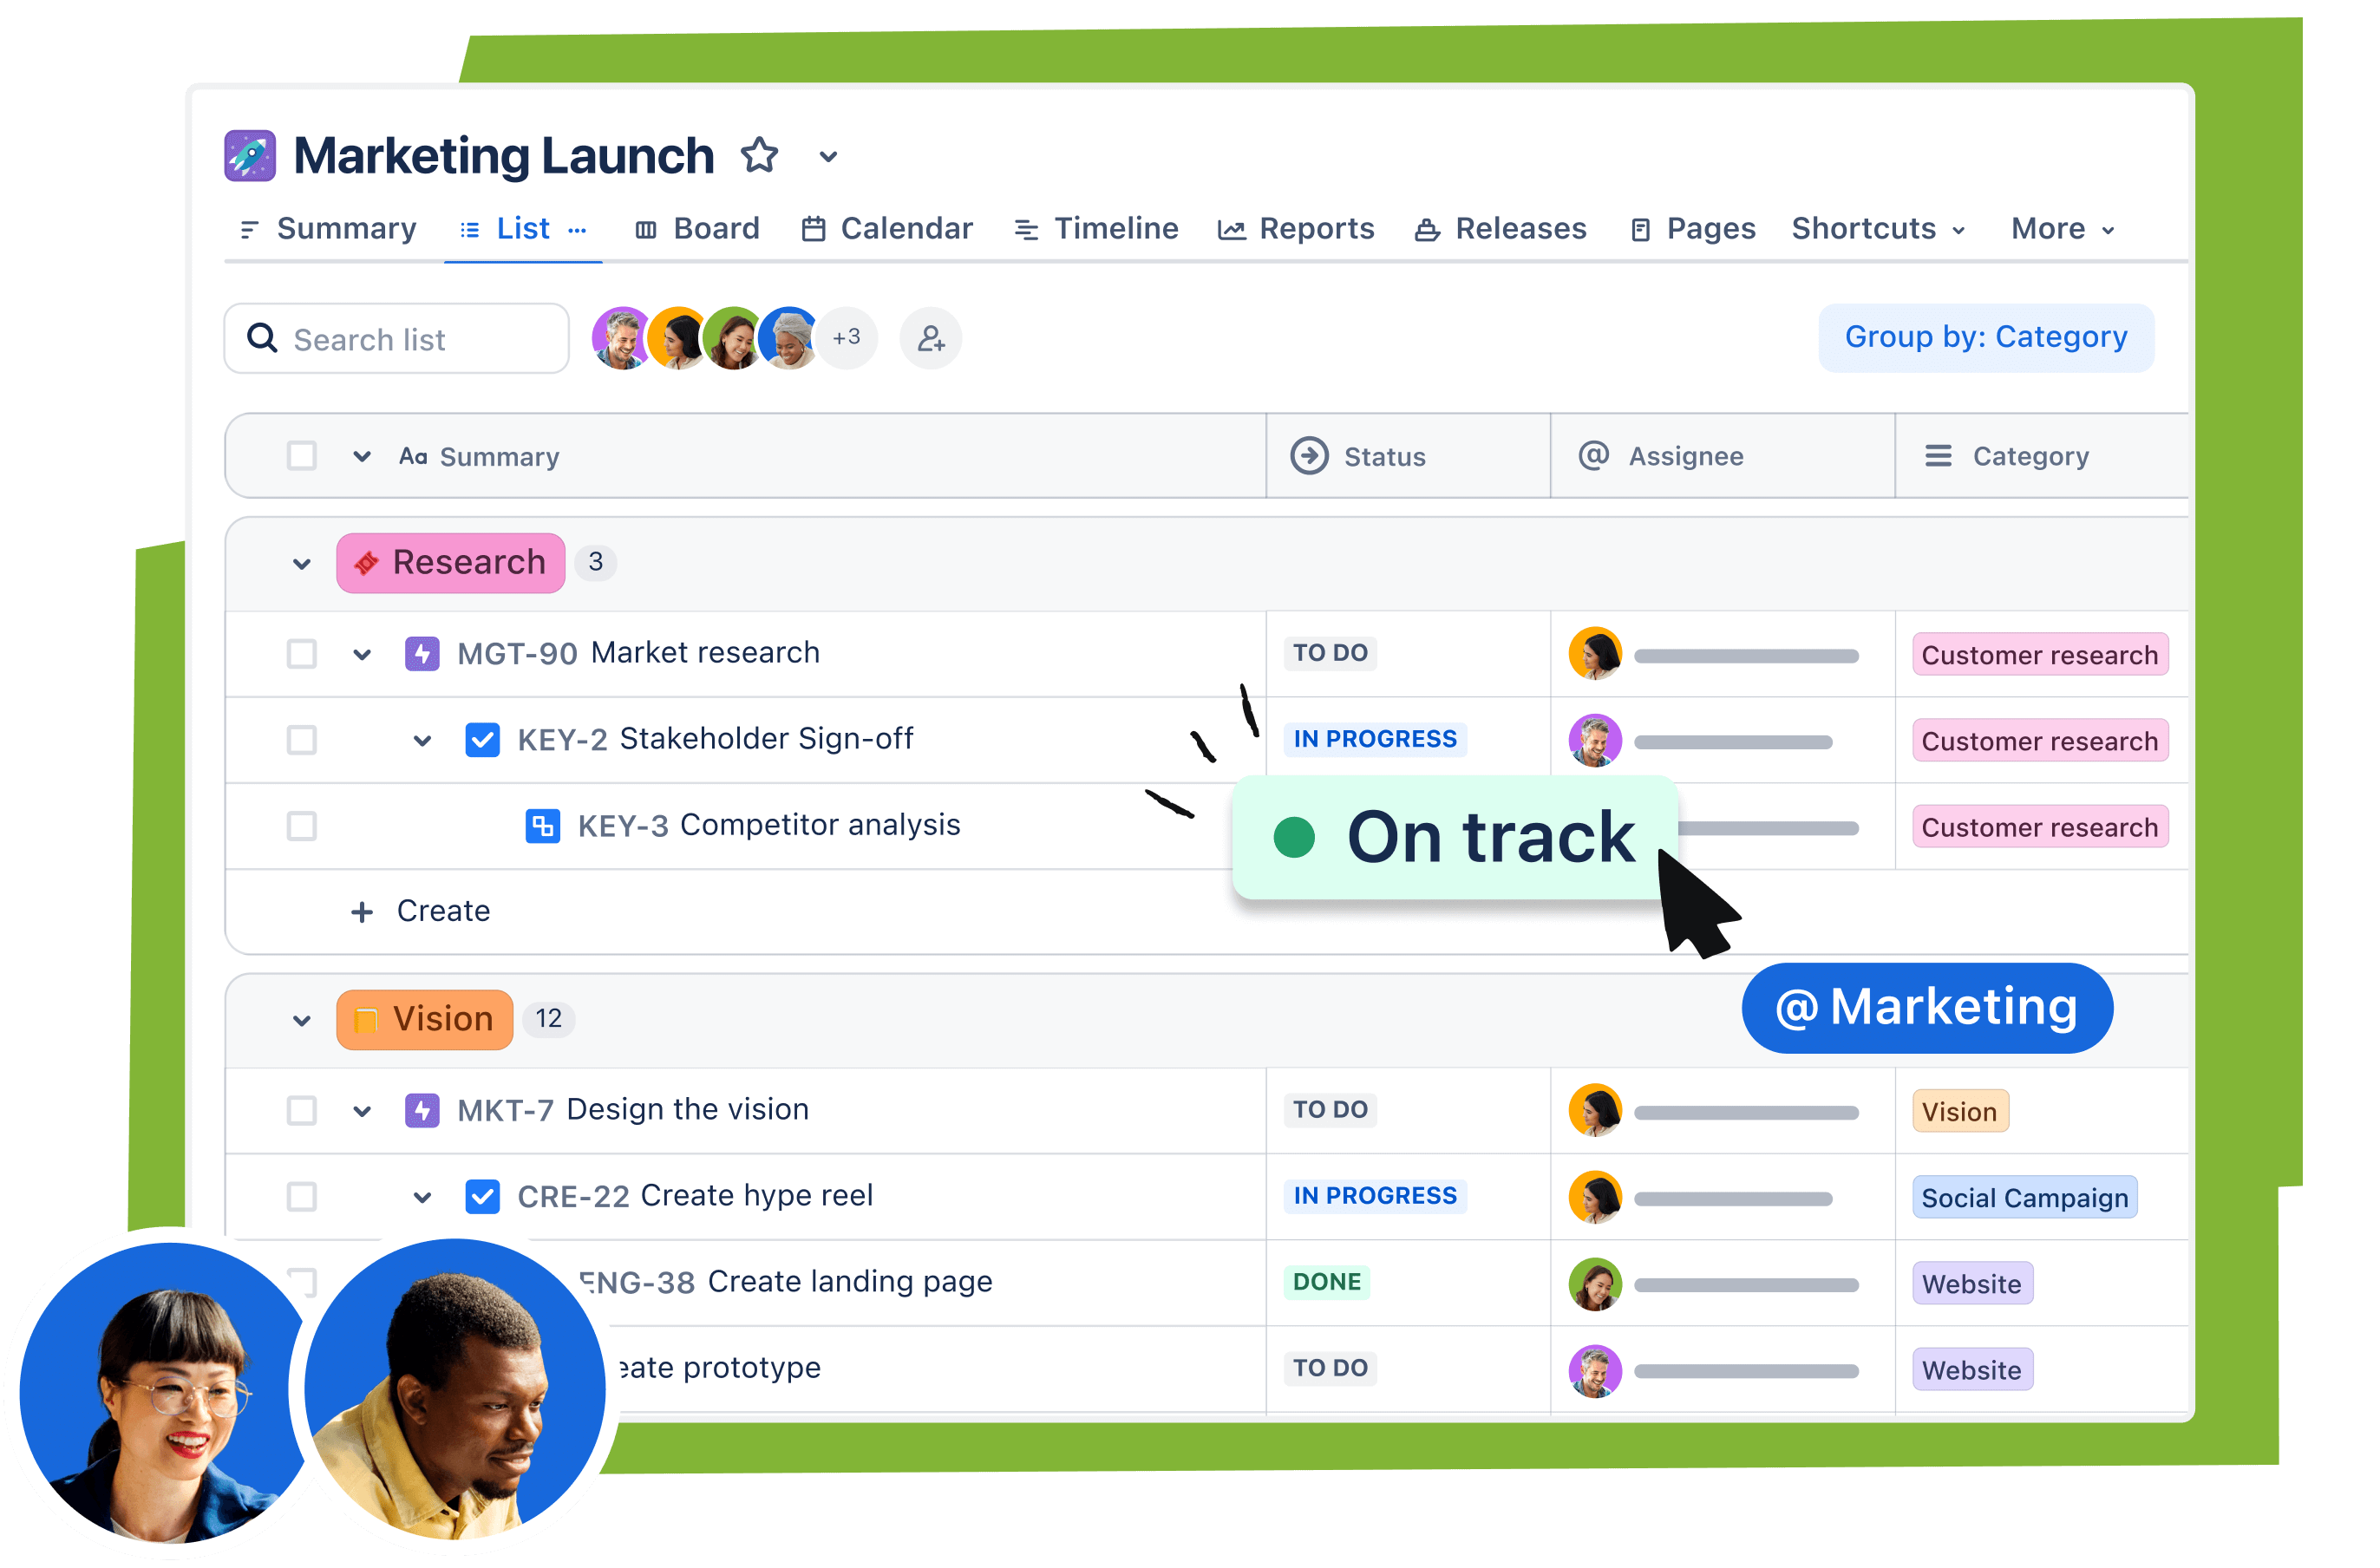 Captura de tela do produto Jira mostrando um projeto de lançamento de marketing em uma visualização lista com tarefas pendentes de marketing.